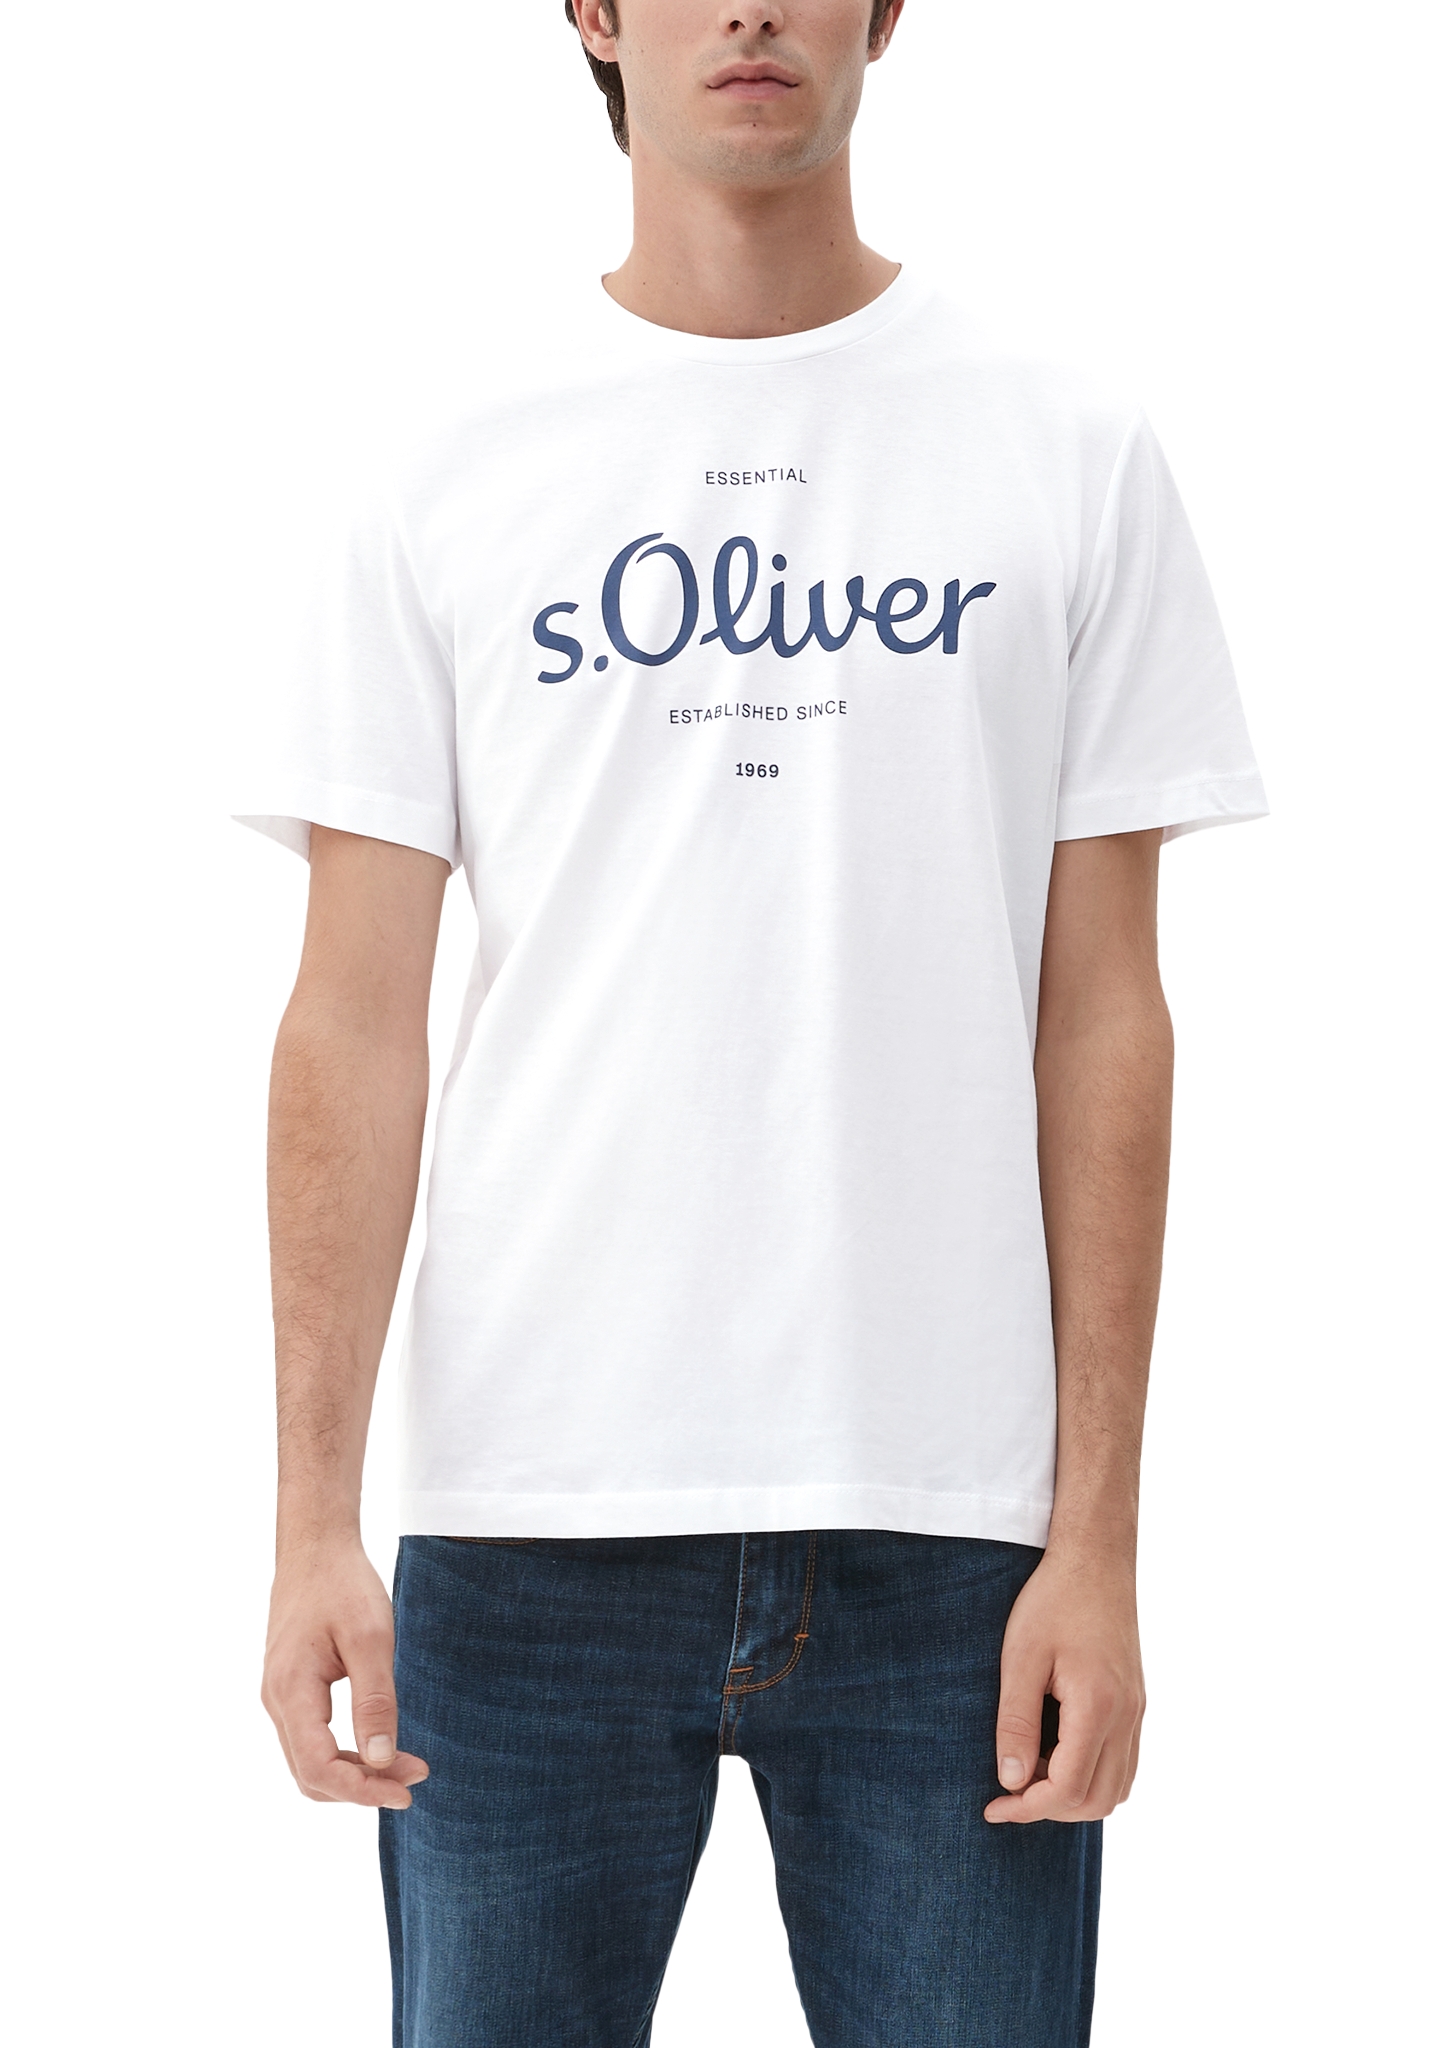 S.Oliver T-Shirt - Horsthemke